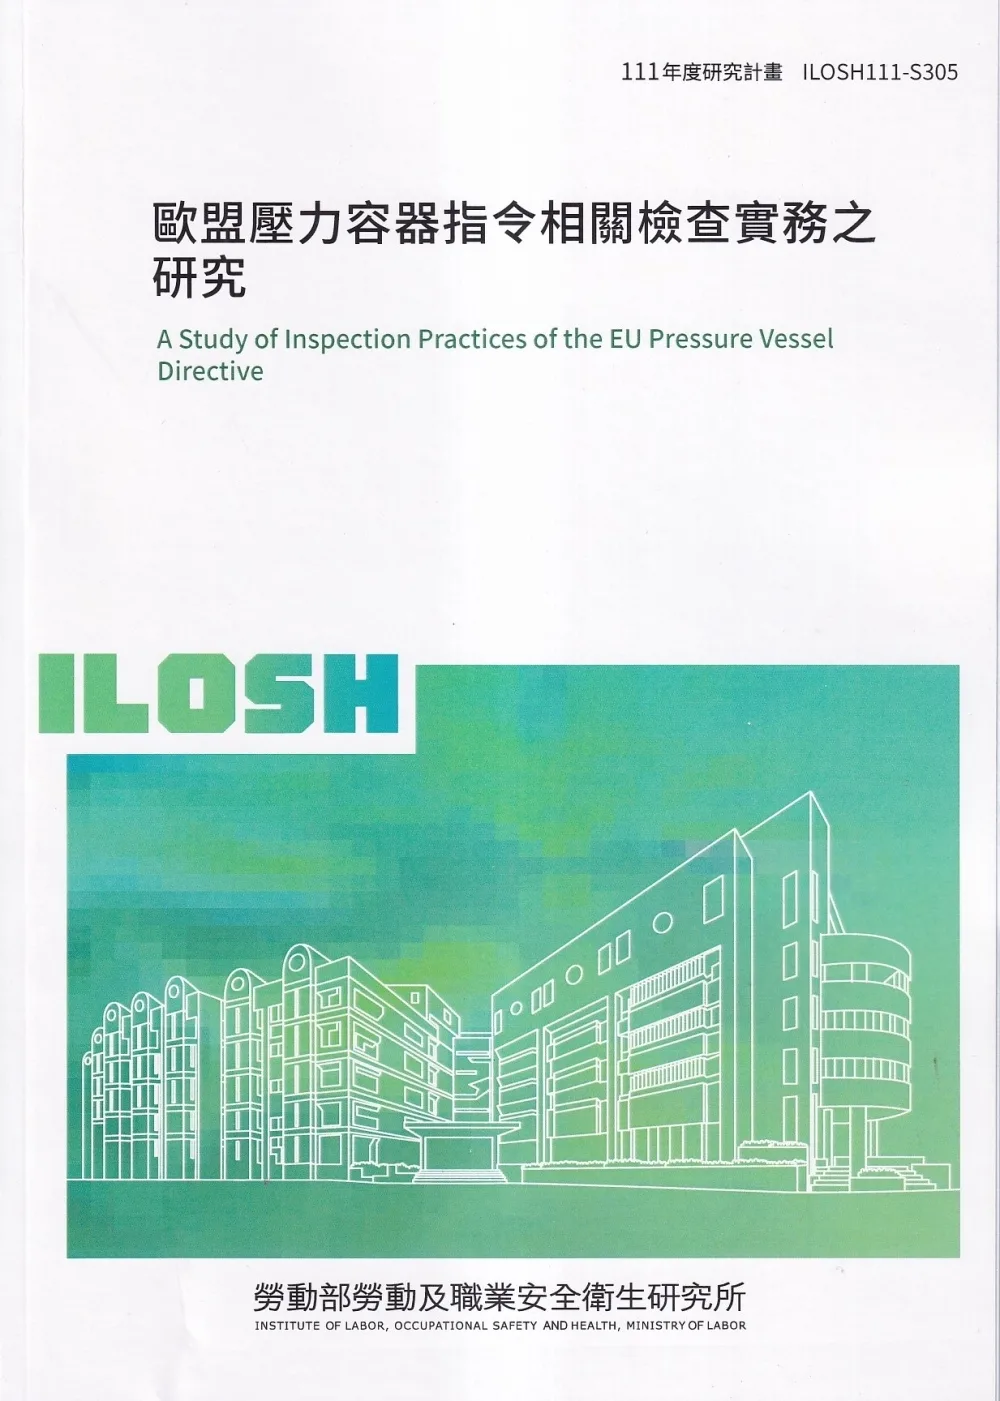 歐盟壓力容器指令相關檢查實務之研究ILOSH111-S305